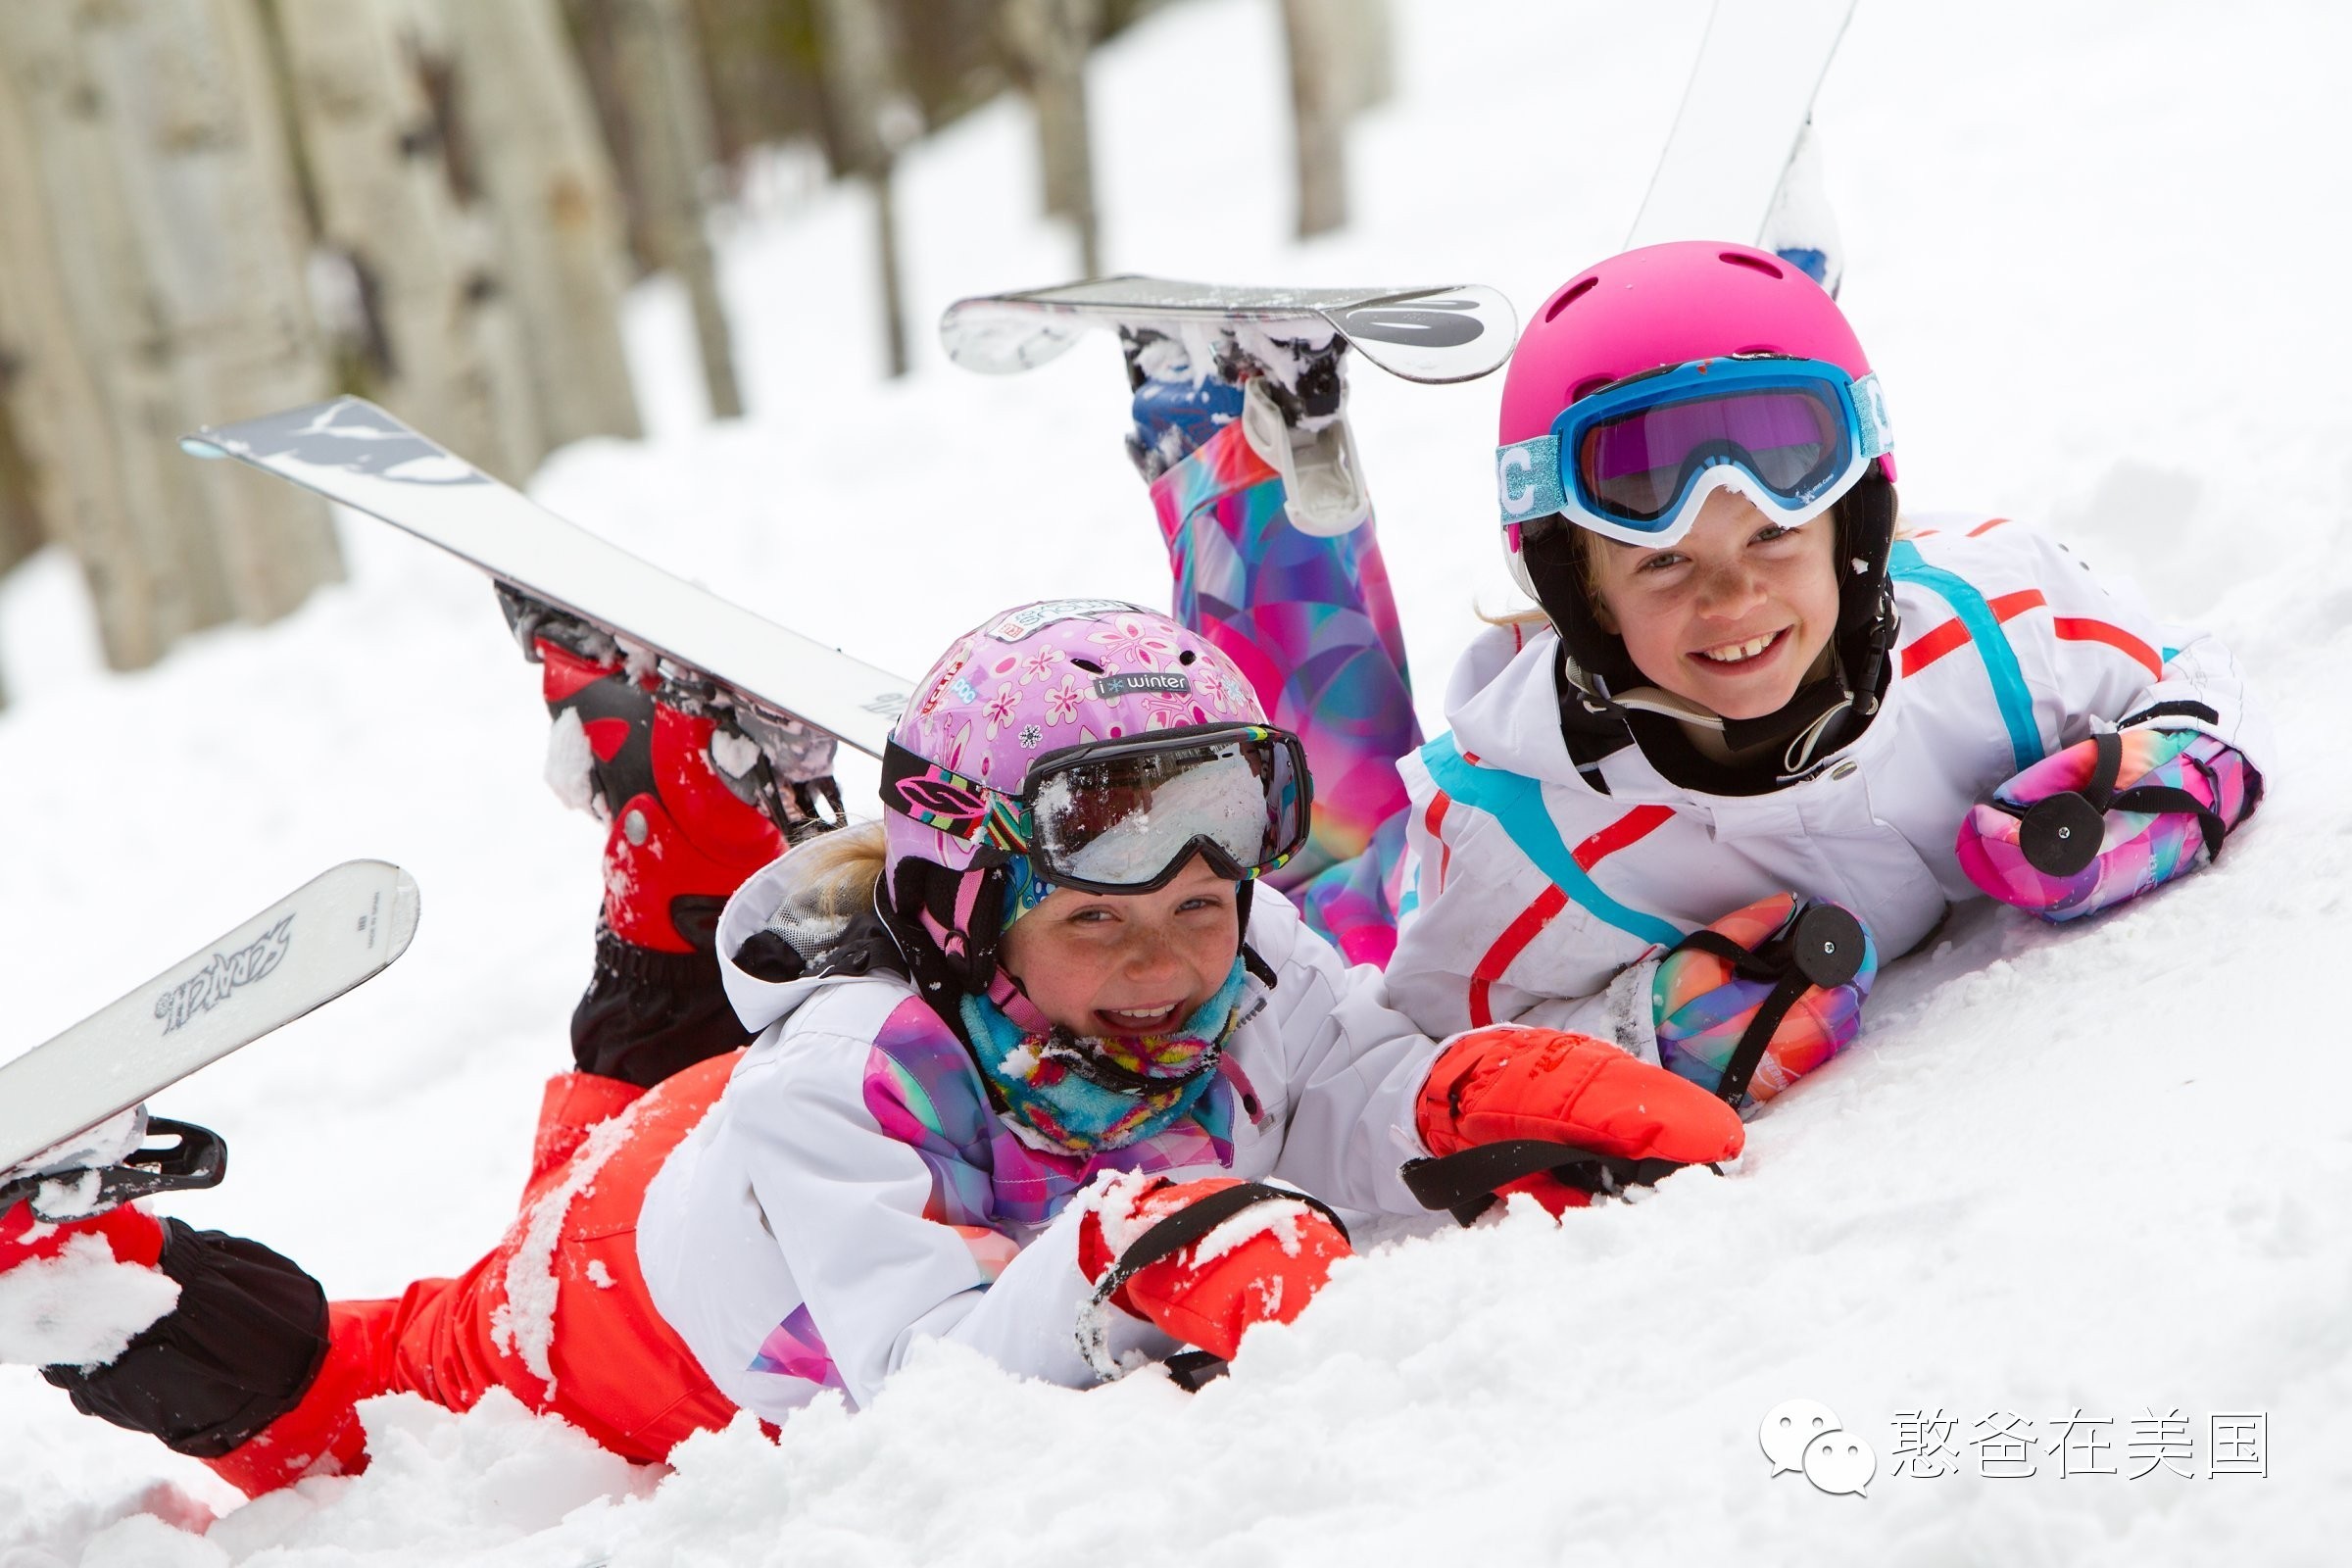 全攻略 | 亲子滑雪玩雪装备，不花冤枉钱，正确开启滑雪初体验